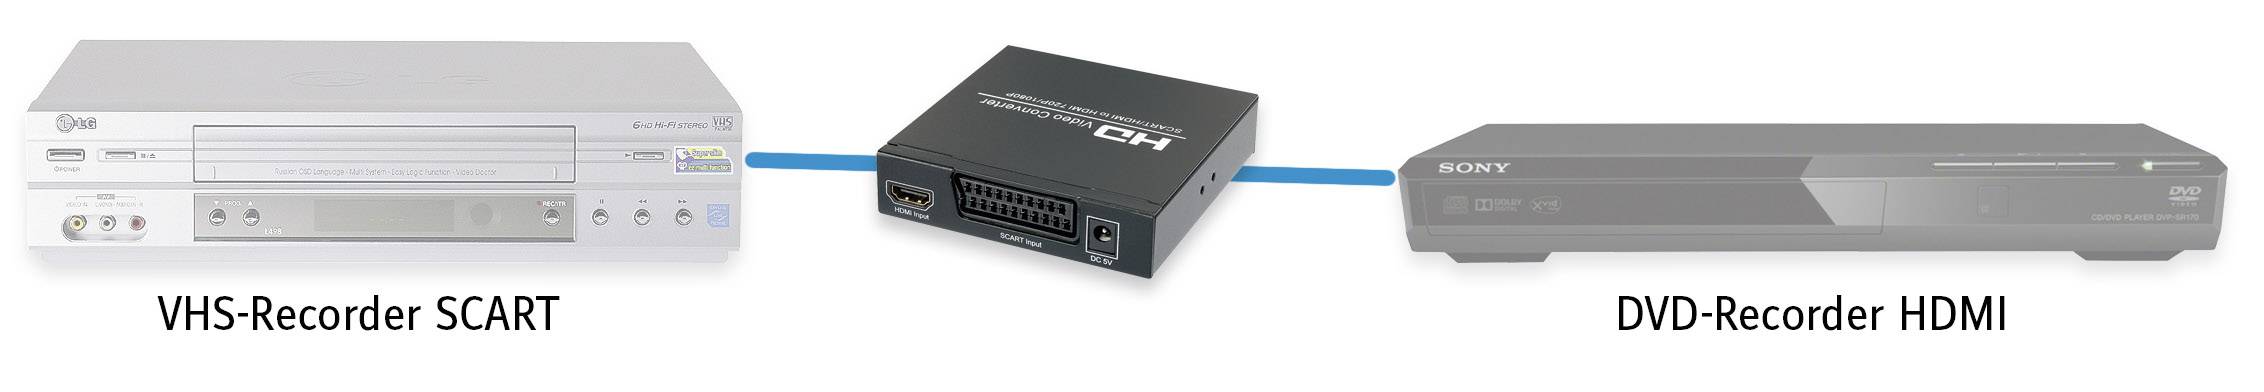 HDMI jelátalakító konverter [ Scart, HDMI bemenet - HDMI